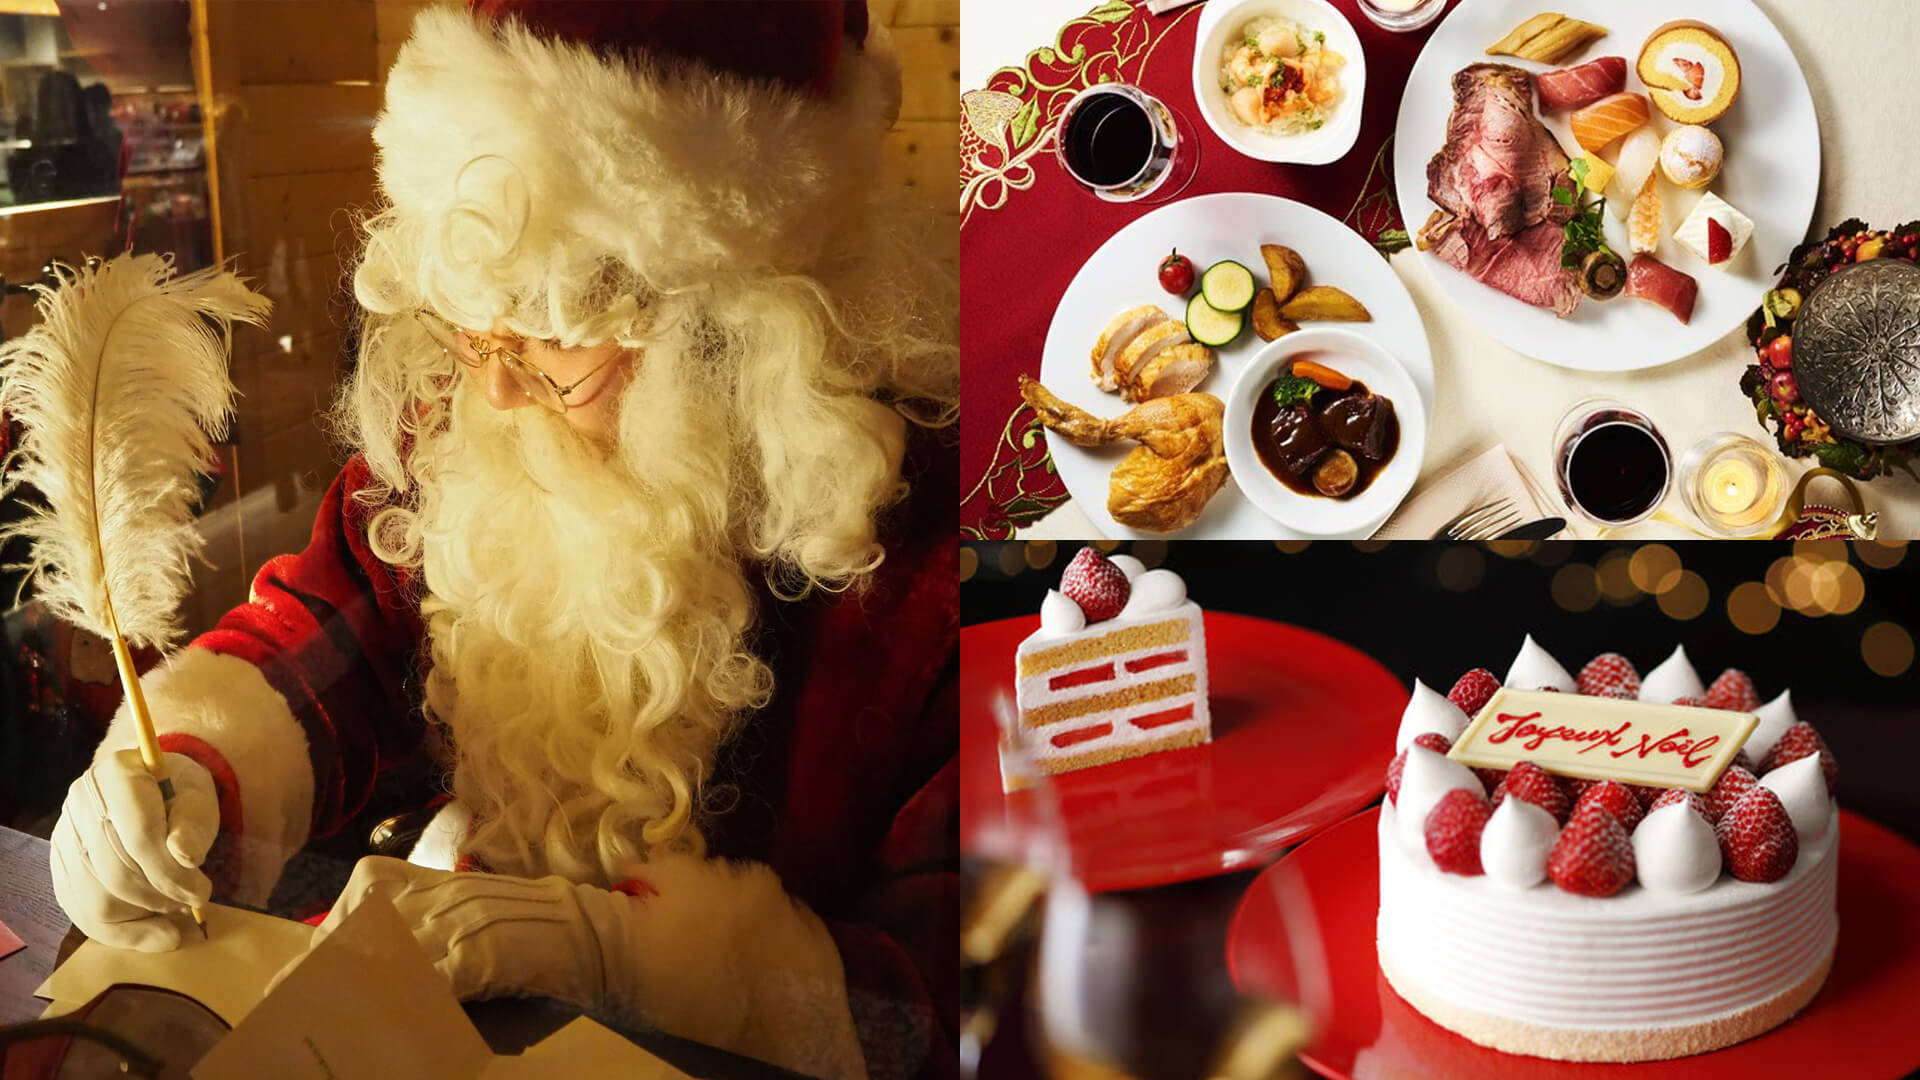 ホテルにサンタがやってくる クリスマス限定メニュー目白押しの最強クリスマスビュッフェ開催 21 ホテルニューオータニ大阪